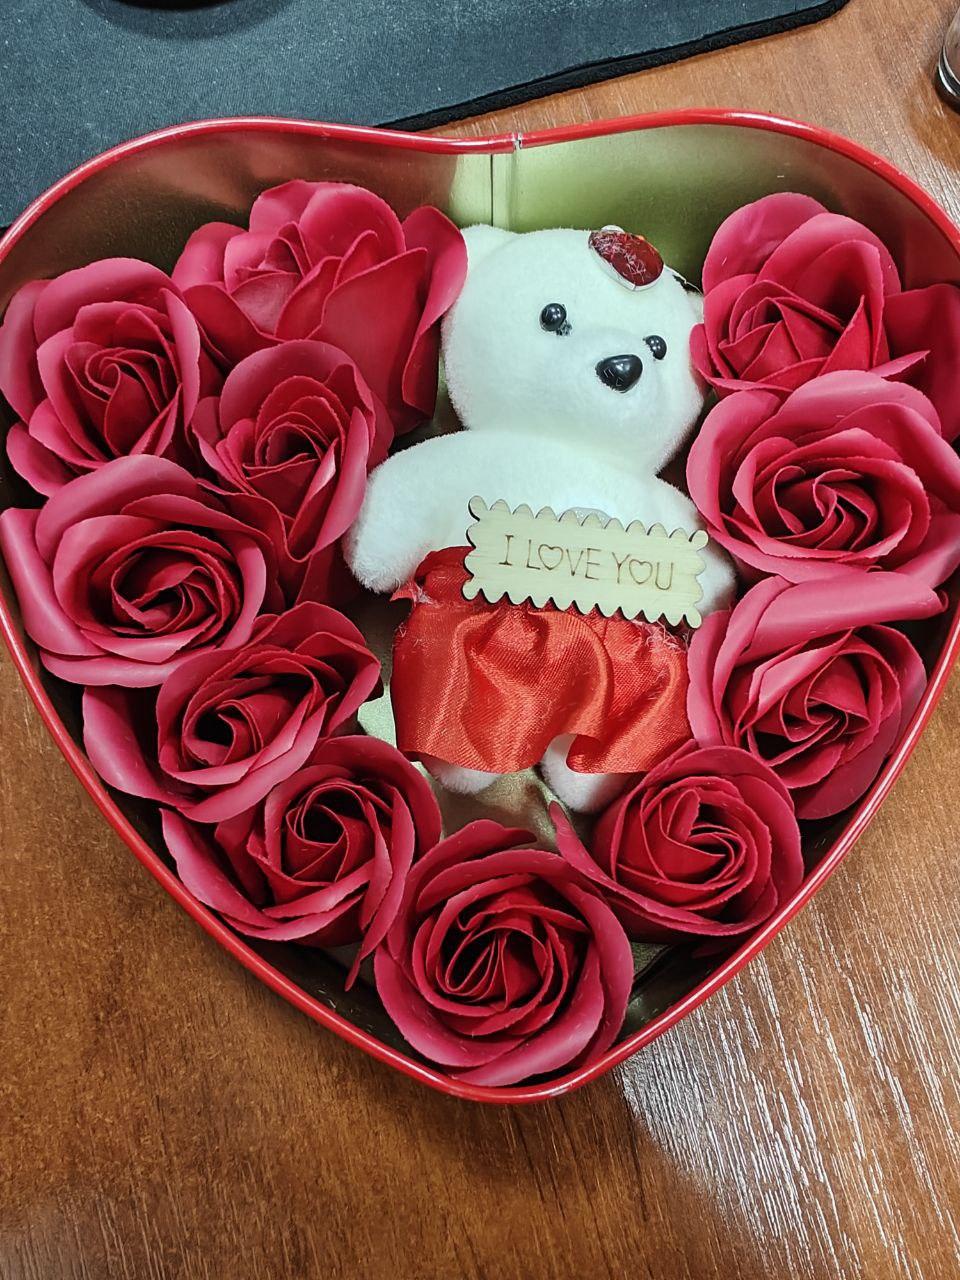 Подарунок коханій дівчині набір коробка у формі серця з мильними квітками 3 трояндами 1 ведмедик